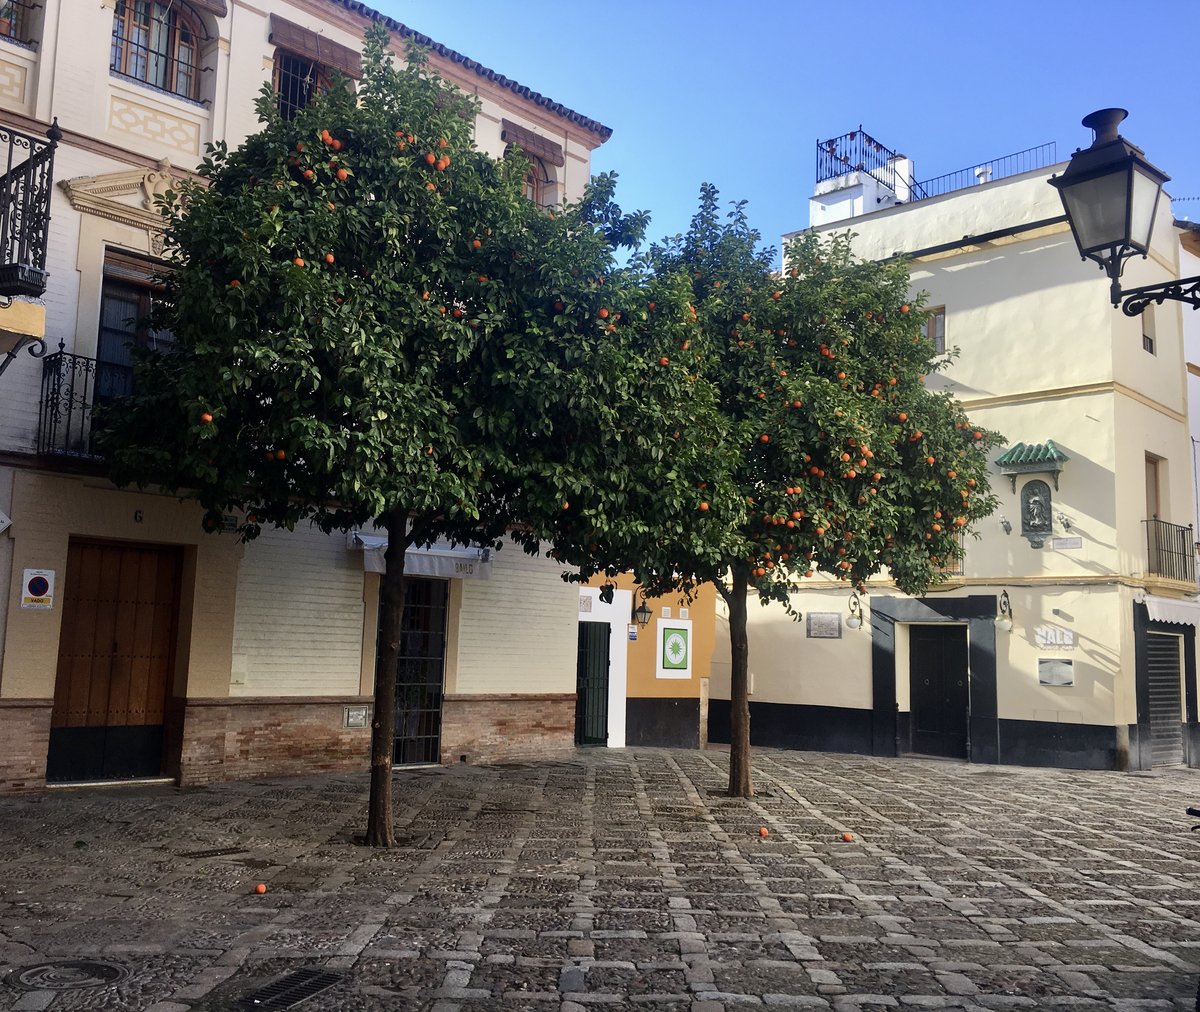 Plaza de los Venerables, Barrio Santa Cruz, Sevilla